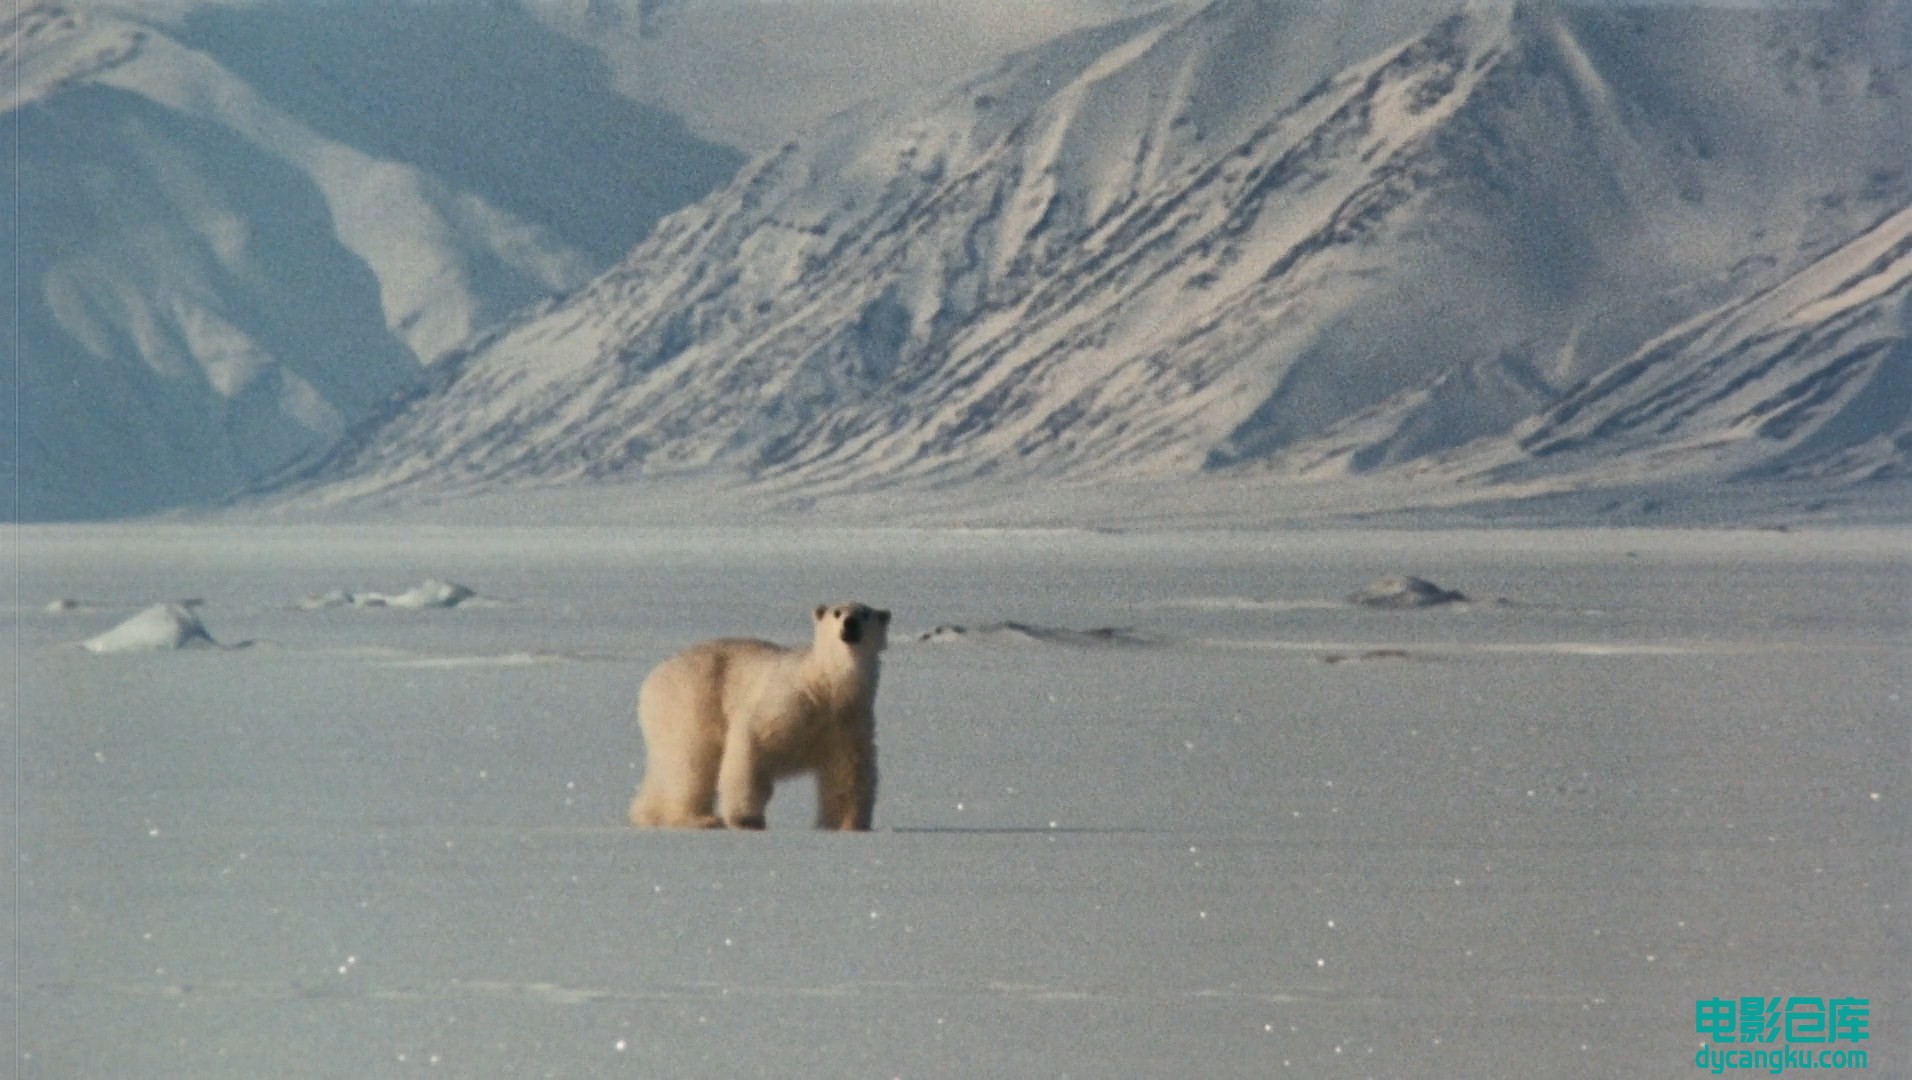 [电影仓库dycangku.com]国家地理.北极传说National.Geographic.Arctic.Tale.2007.Blur.jpg